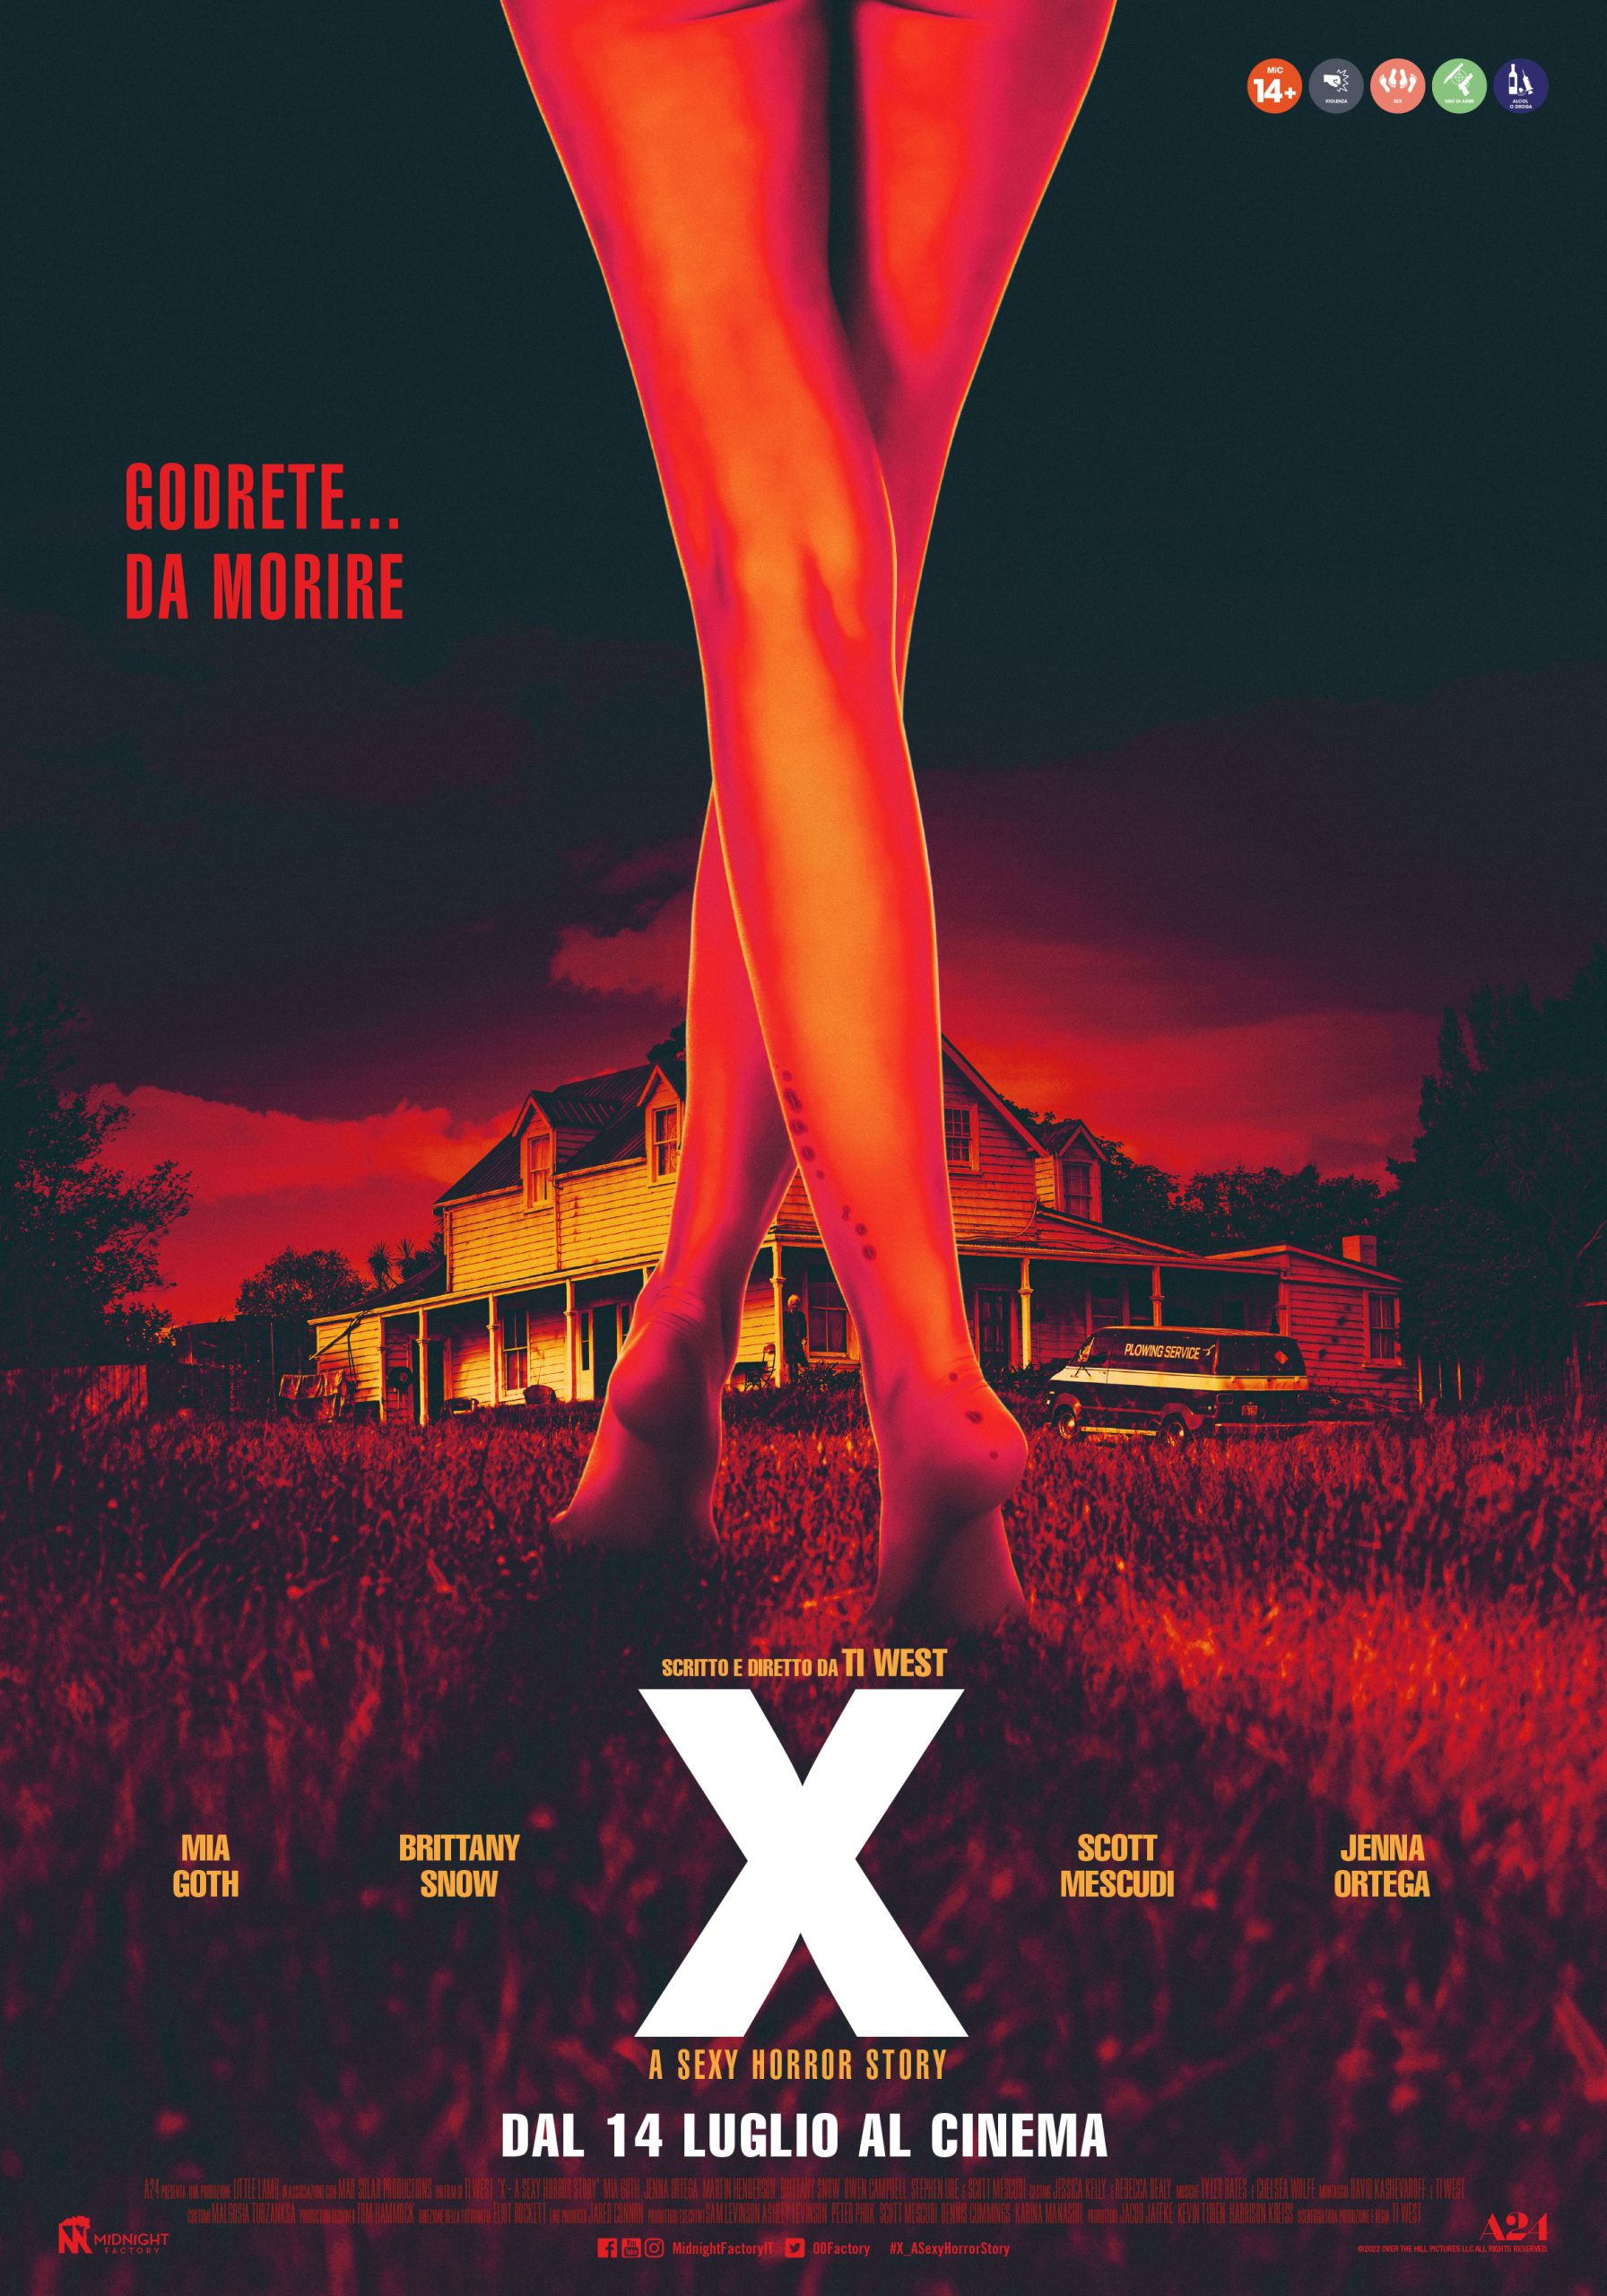 [NEWS] Fissata per il 14 luglio l’uscita italiana dell’horror X – A Sexy Horror Story